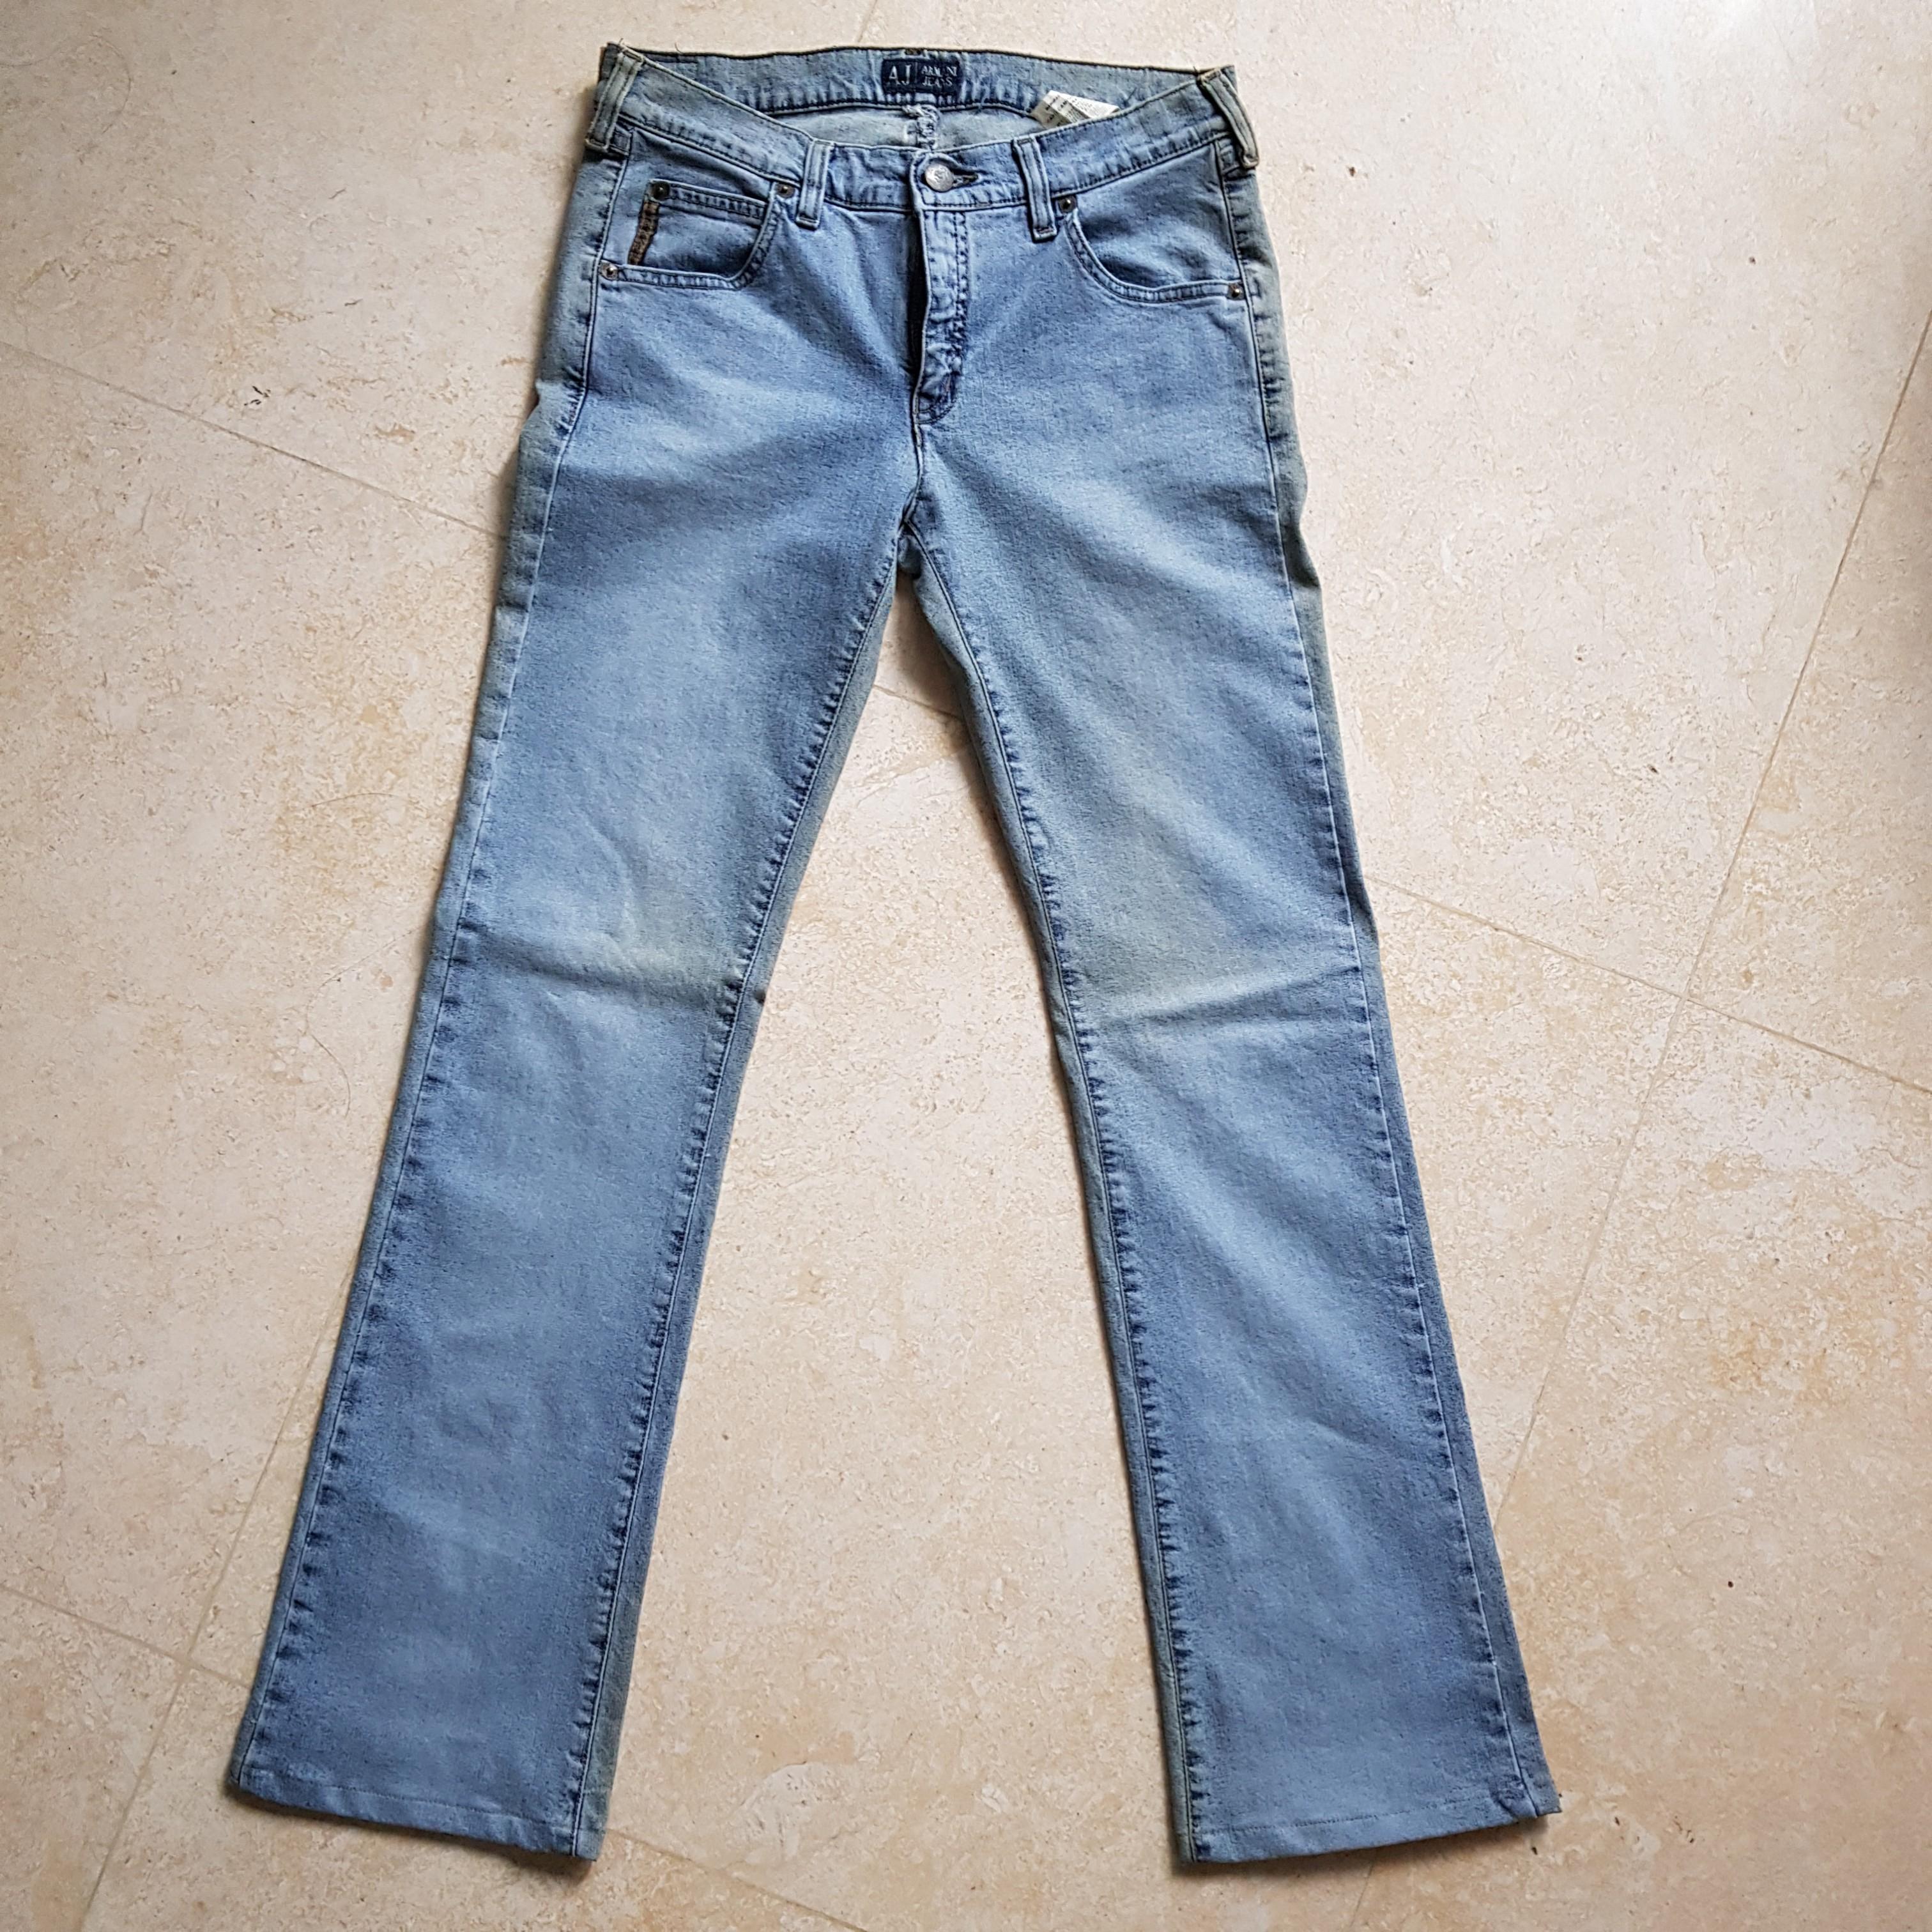 new armani jeans